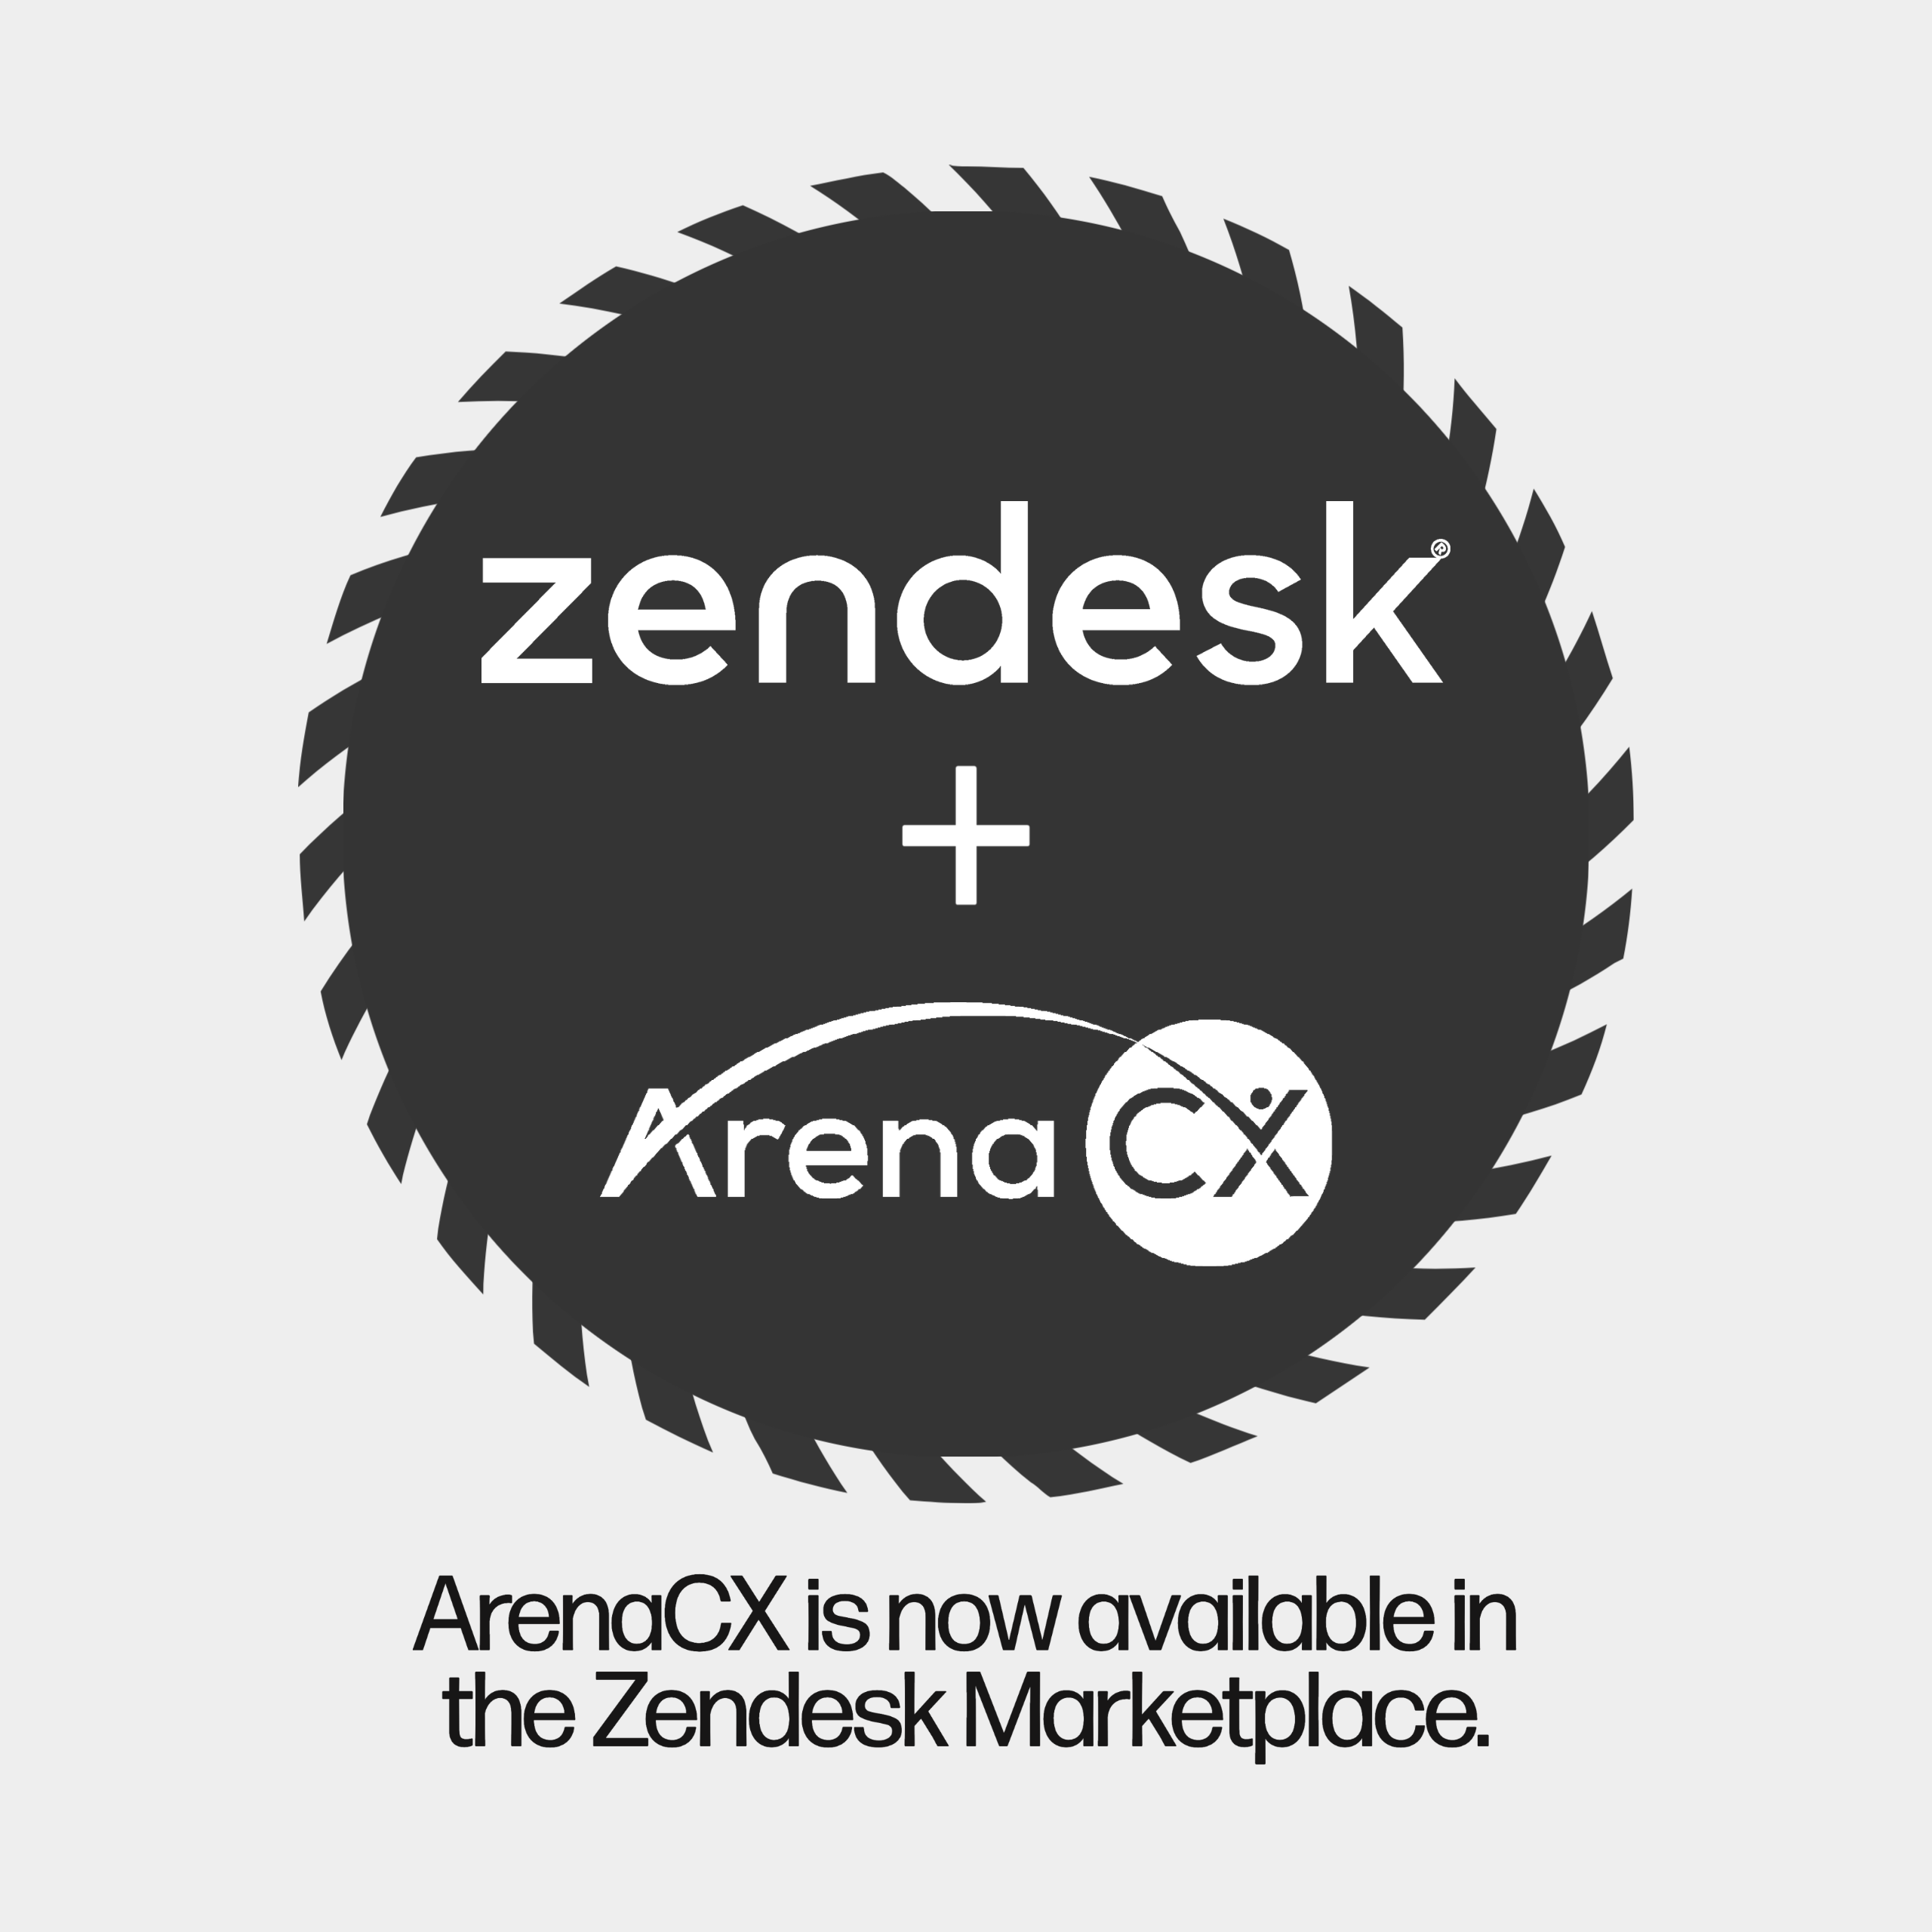 zendesk plus arenacx partnership announcement